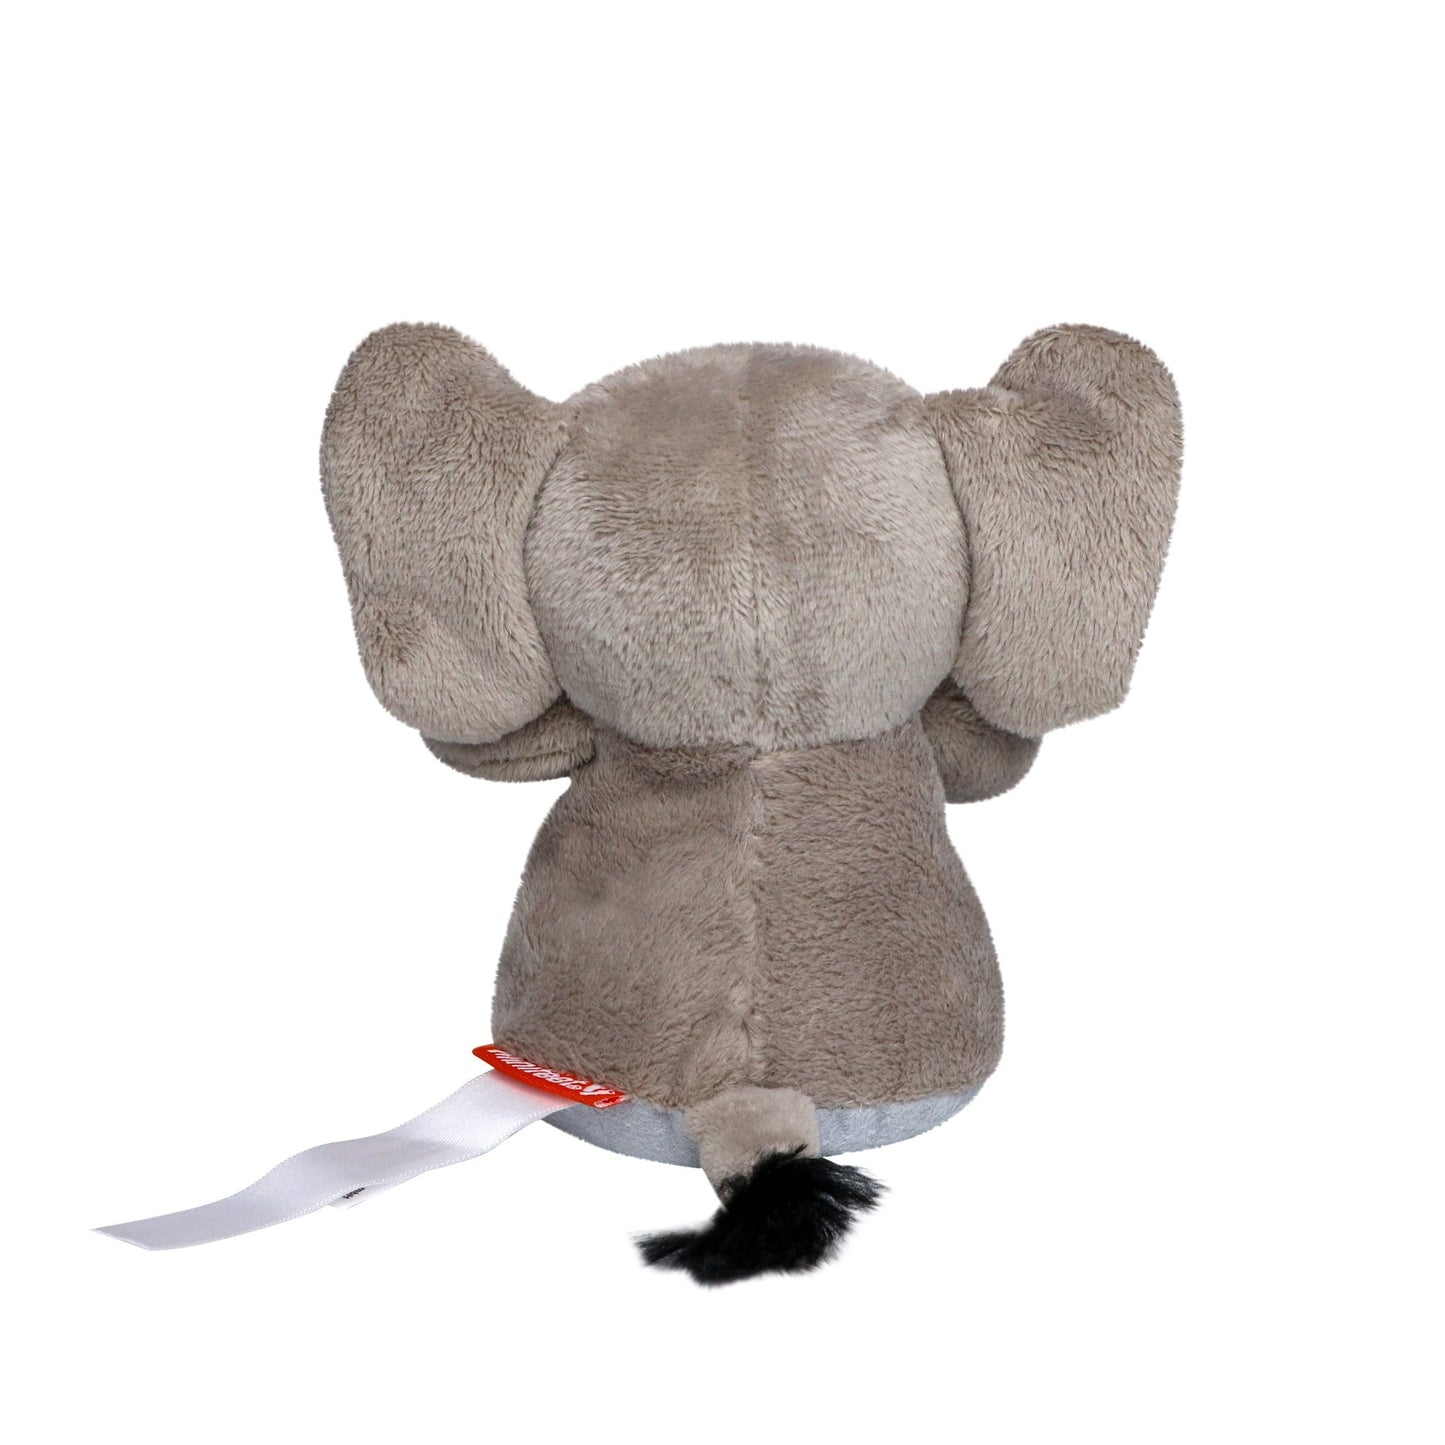 XXL Elefant mit Microfaser-Unterseite zur Reinigung von glatten Oberflächen (z.B. Display) - HalloGeschenk.de #geschenkideen# #personalisiert# #geschenk#